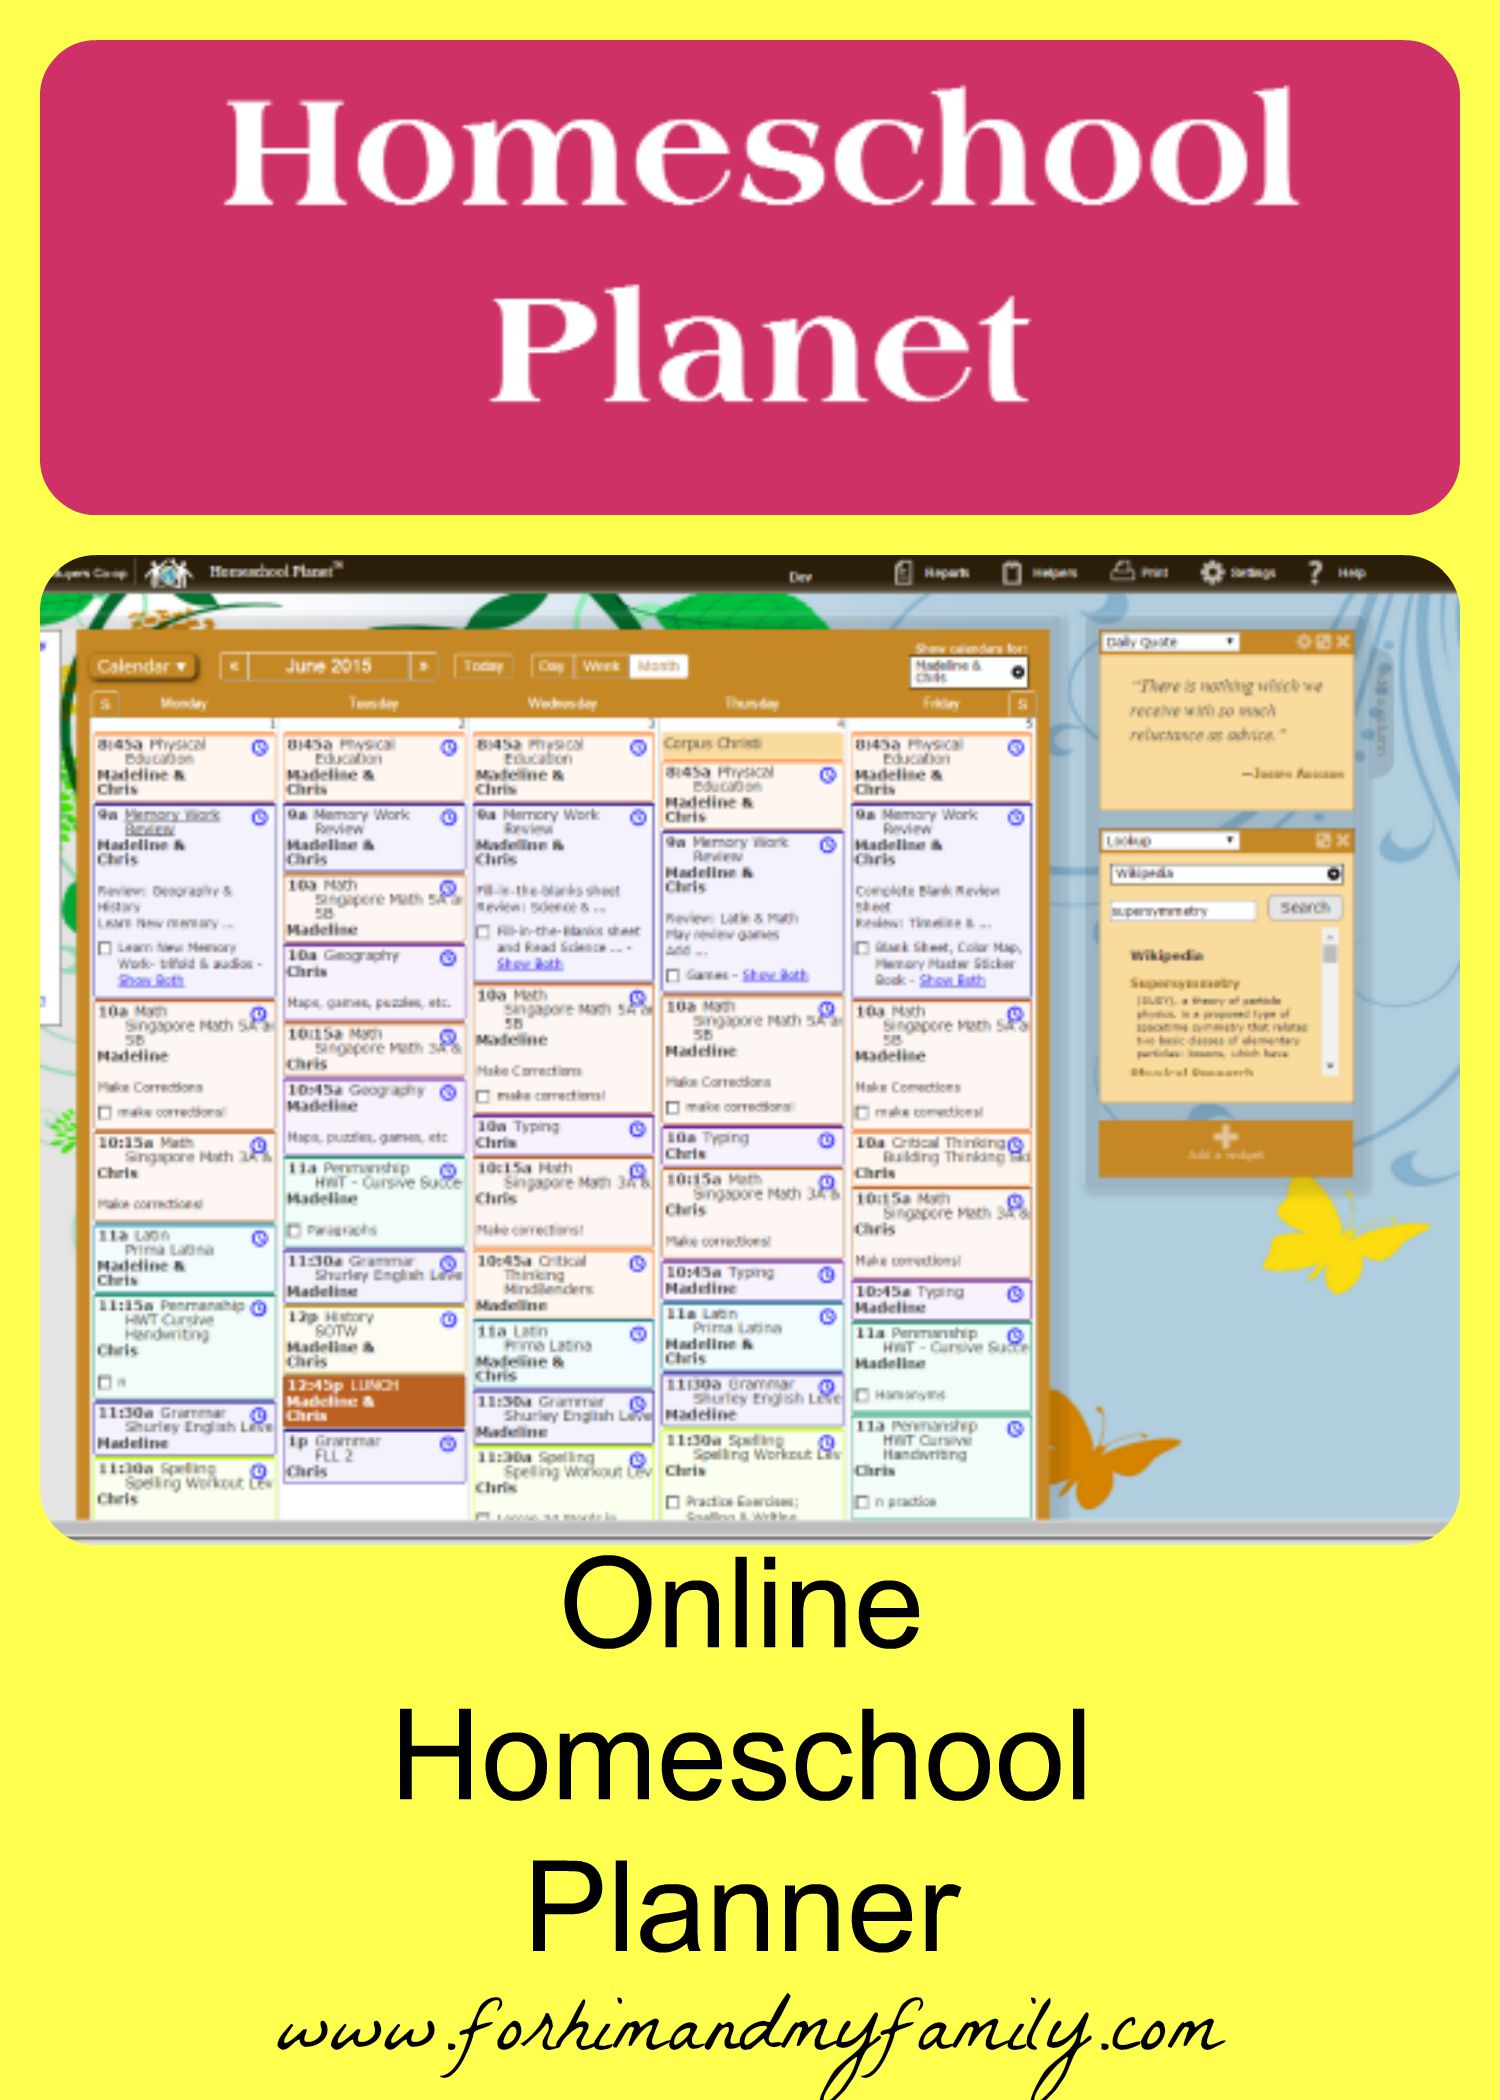 Online Homeschool Planner